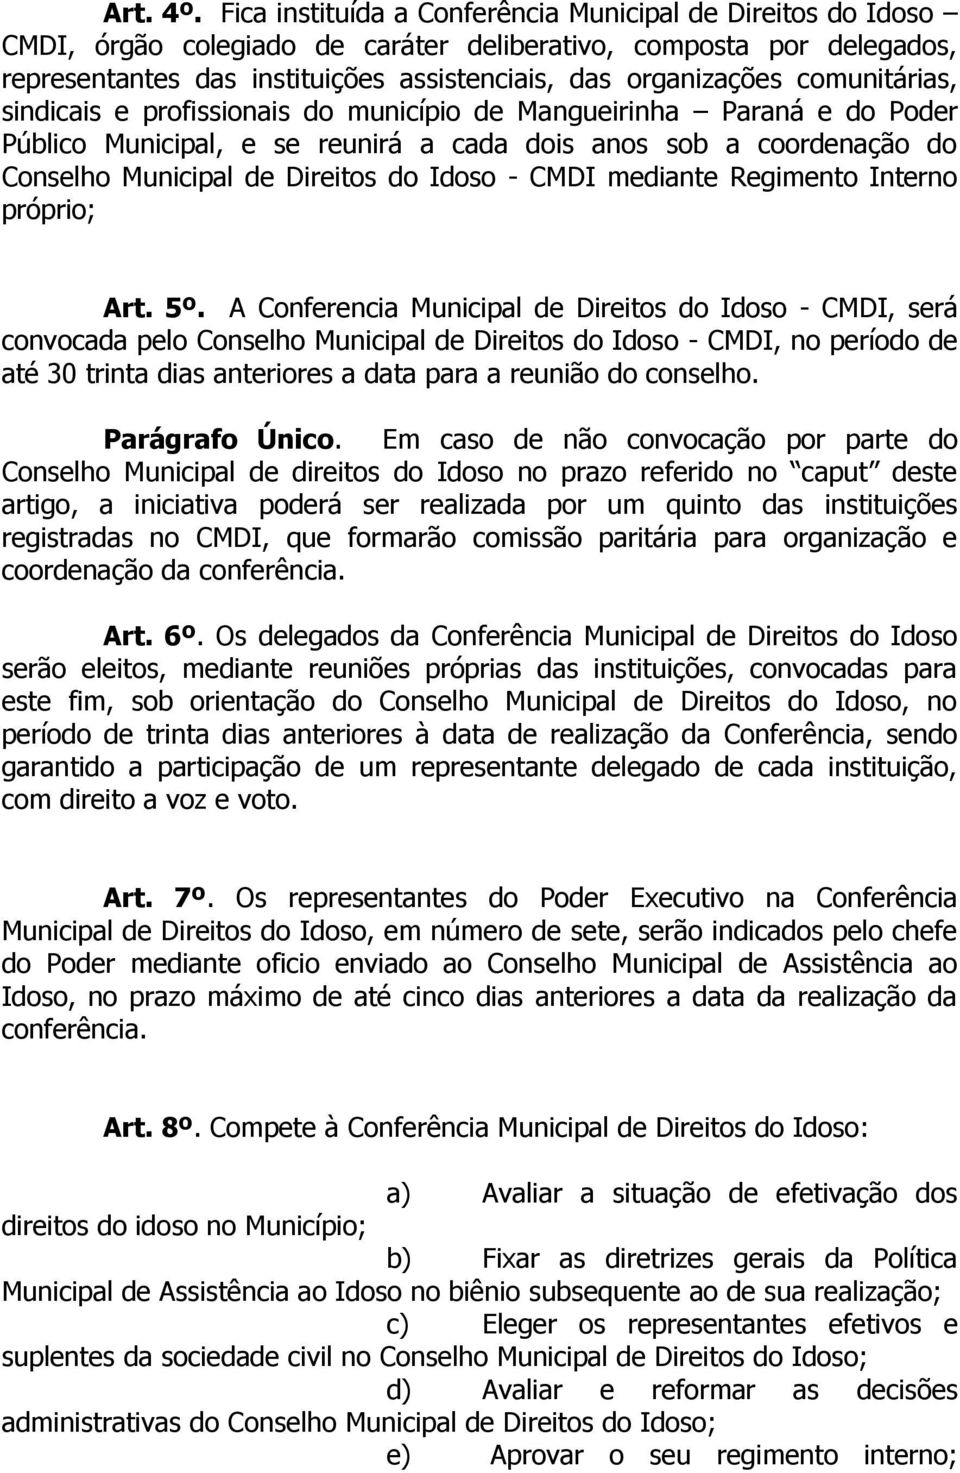 comunitárias, sindicais e profissionais do município de Mangueirinha Paraná e do Poder Público Municipal, e se reunirá a cada dois anos sob a coordenação do Conselho Municipal de Direitos do Idoso -